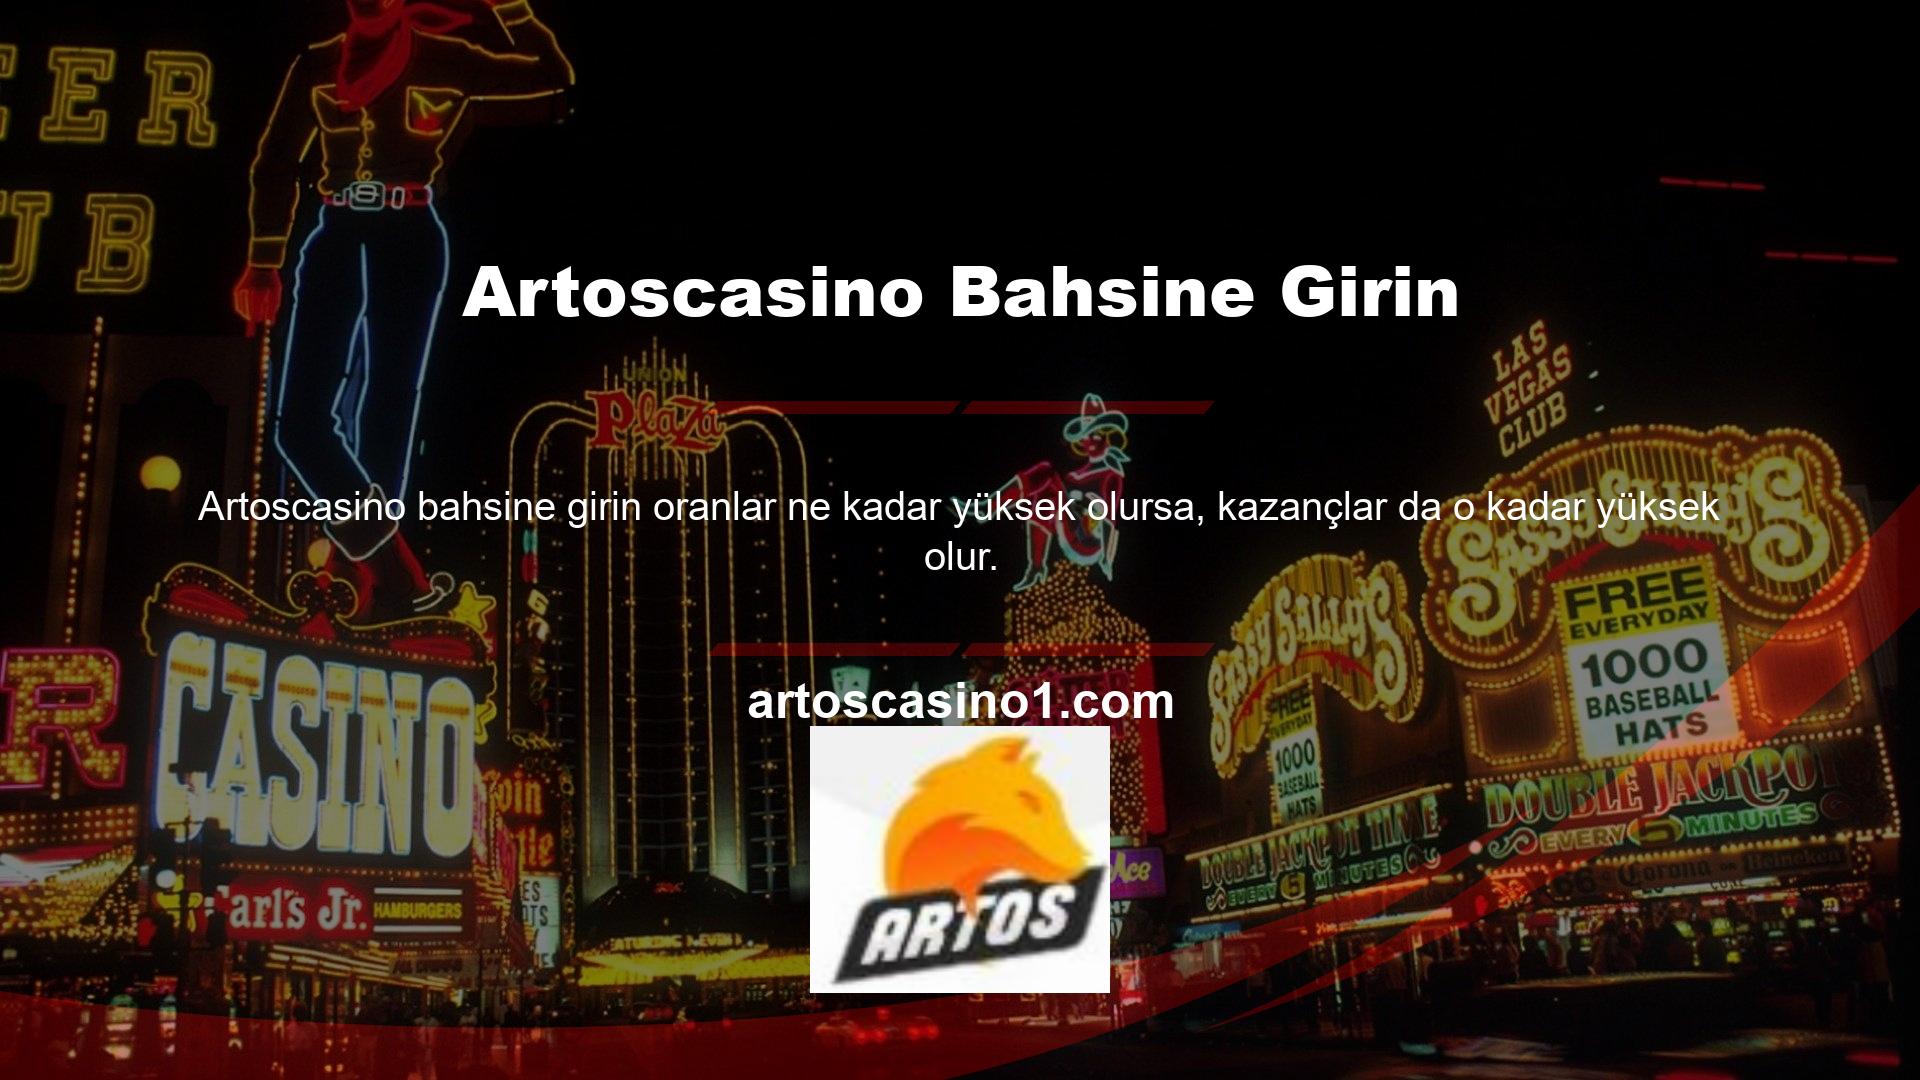 Ayrıca Artoscasino web sitesi, kazanma şansınızı artırmak için kullanılabilecek çeşitli bahis bonusları sunmaktadır